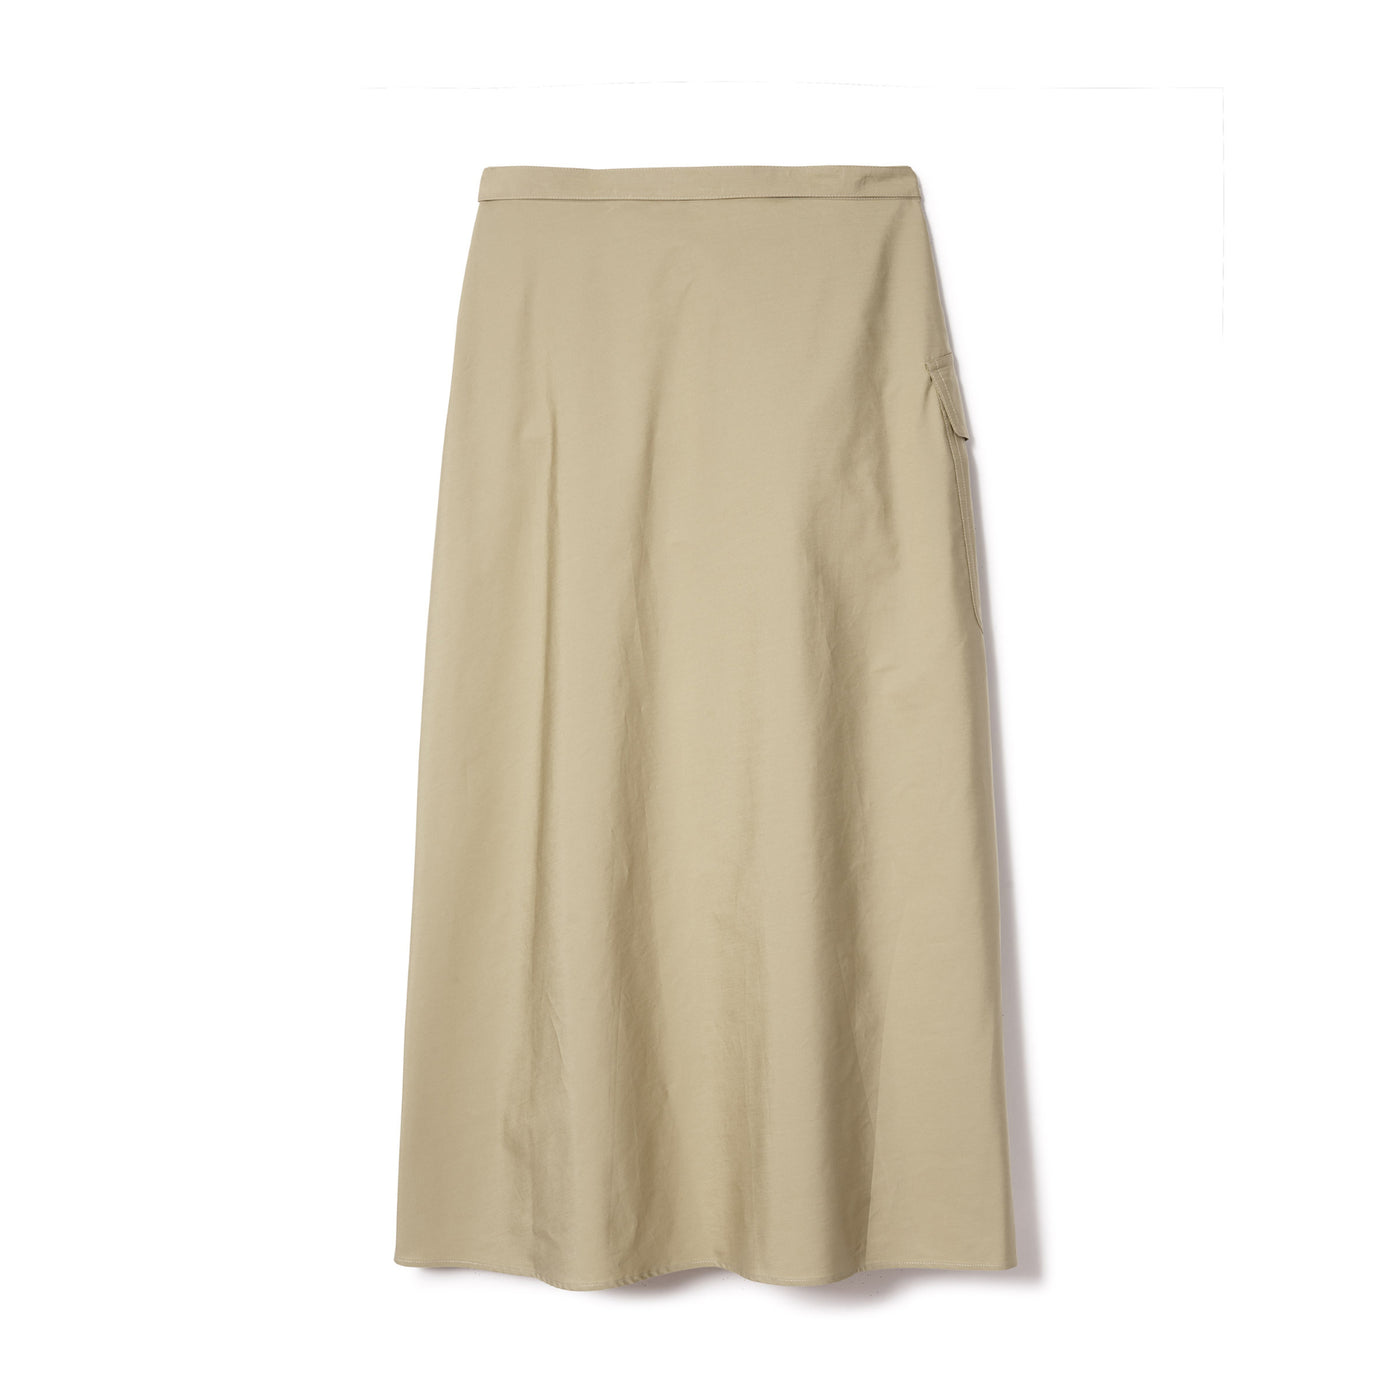 Women's Military One Pocket Skirt - Beige Tan